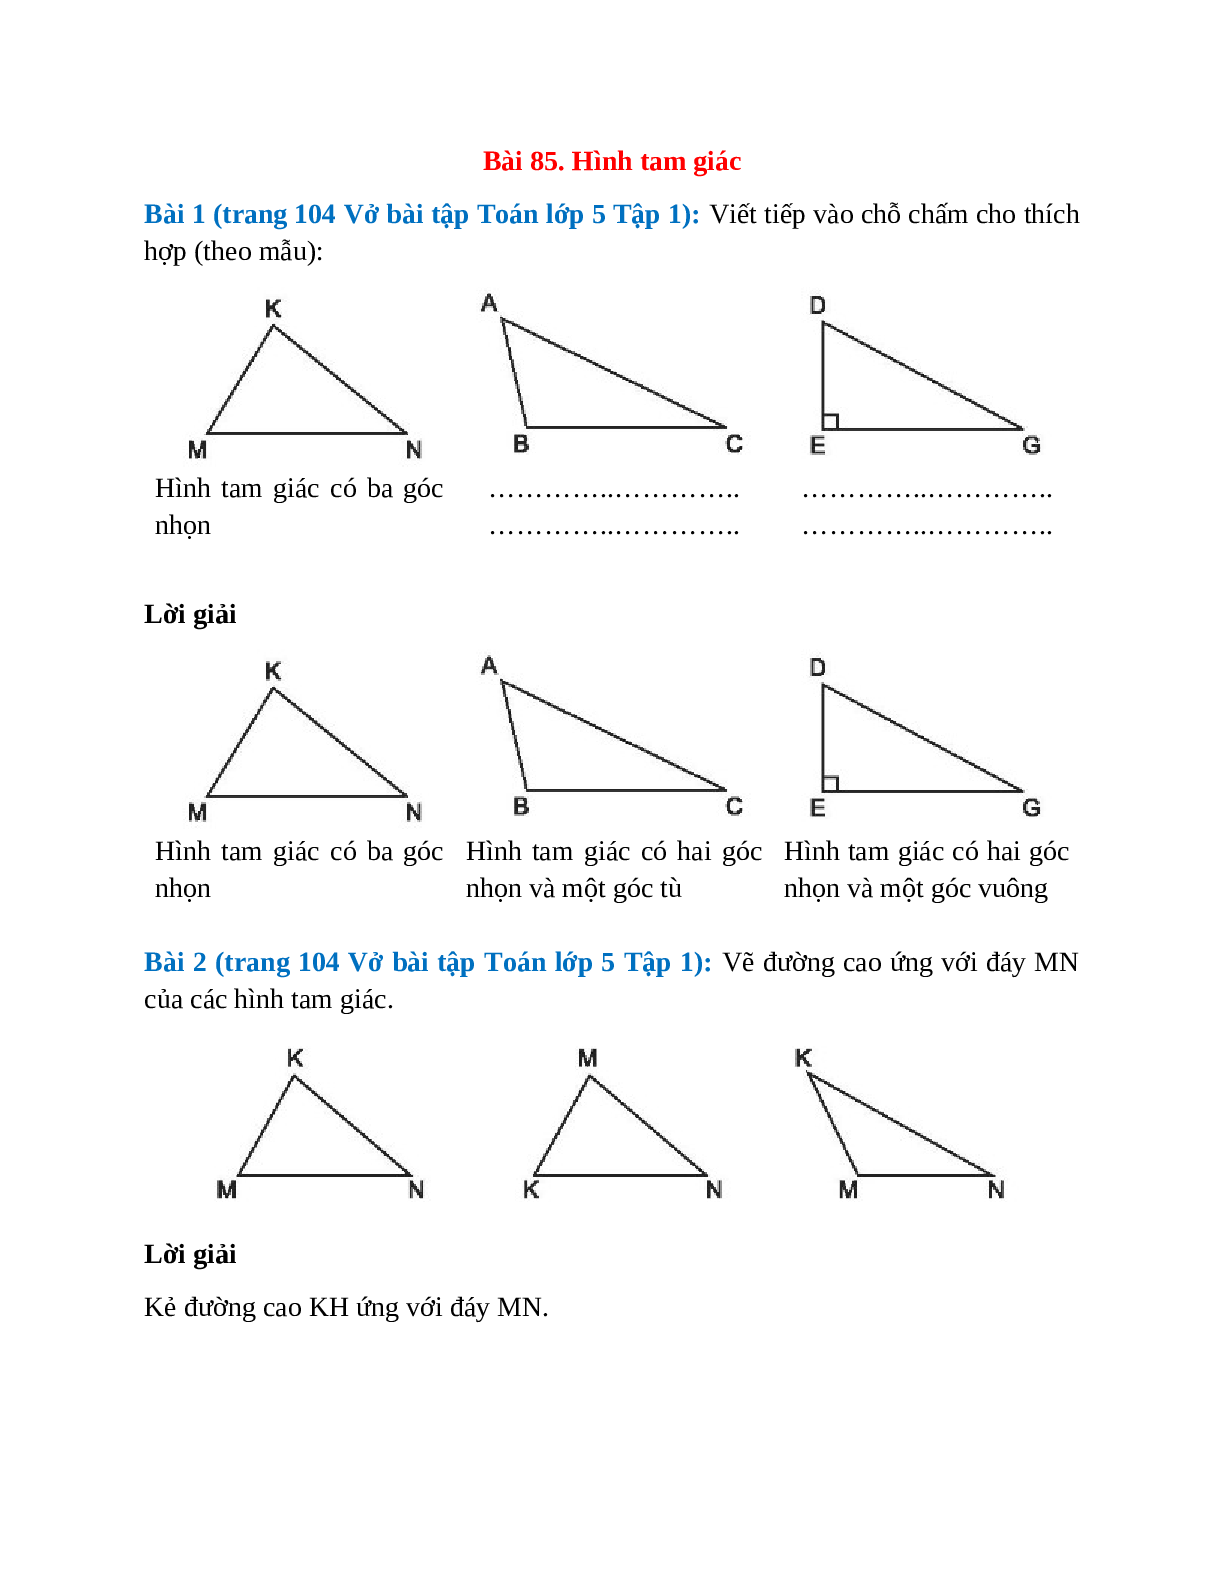 Vở bài tập Toán lớp 5 Tập 1 trang 104 Bài 85: Hình tam giác (trang 1)